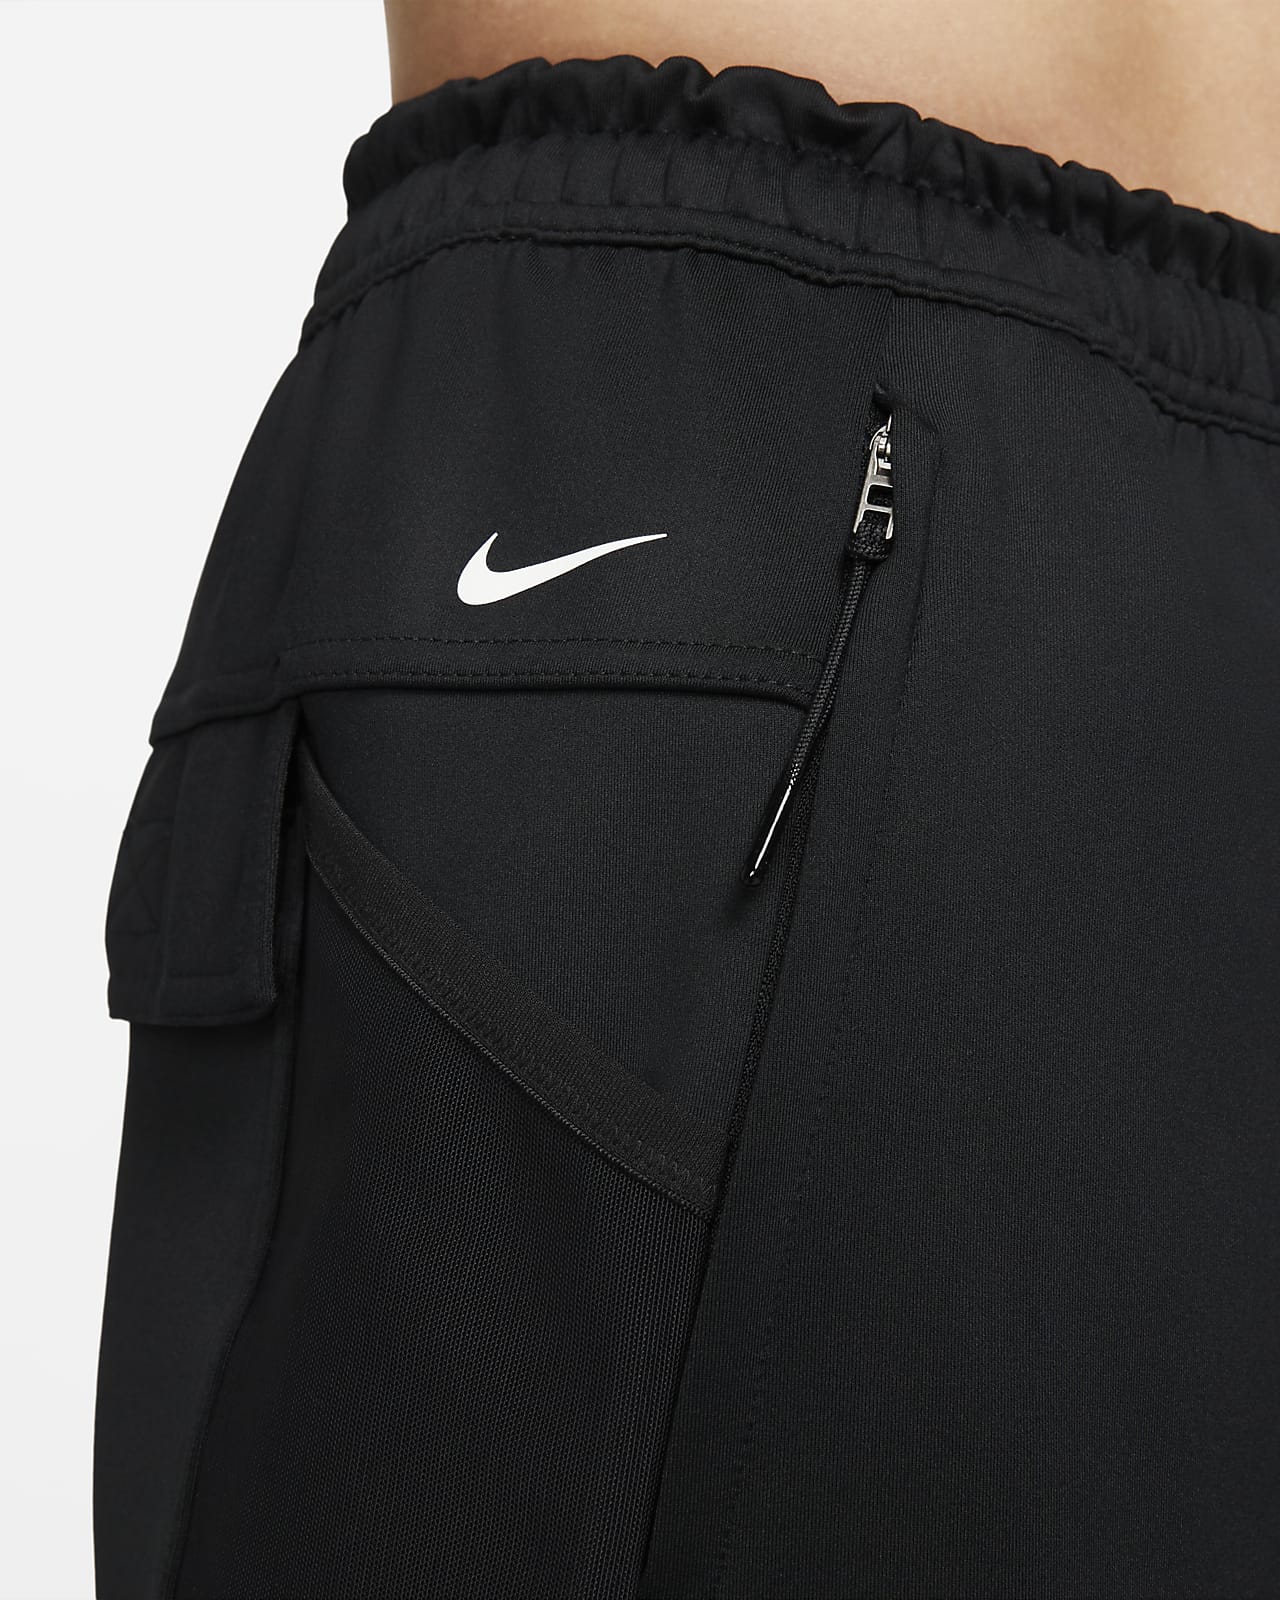 Nike Dri-FIT ADV APS Men's 15cm (approx.) Unlined Versatile Shorts. Nike AU